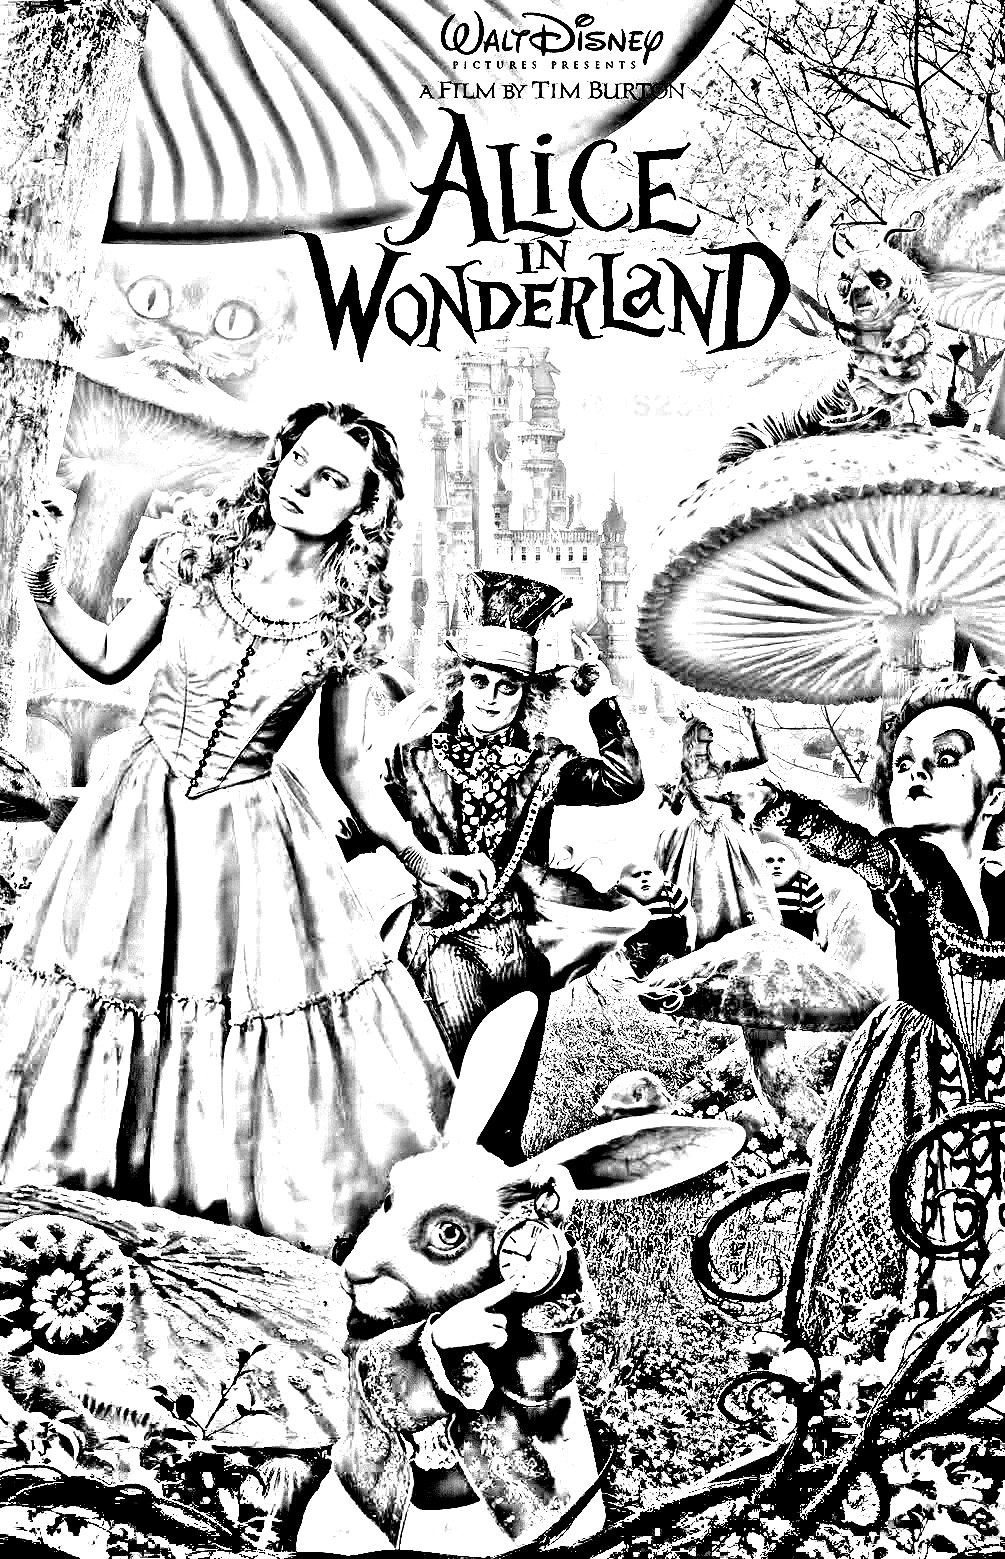 Coloriage affiche Alice au pays des merveilles Tim Burton (Disney). Ce coloriage est parfait pour les fans du film, car il permet de revivre les aventures d'Alice et de ses compagnons.